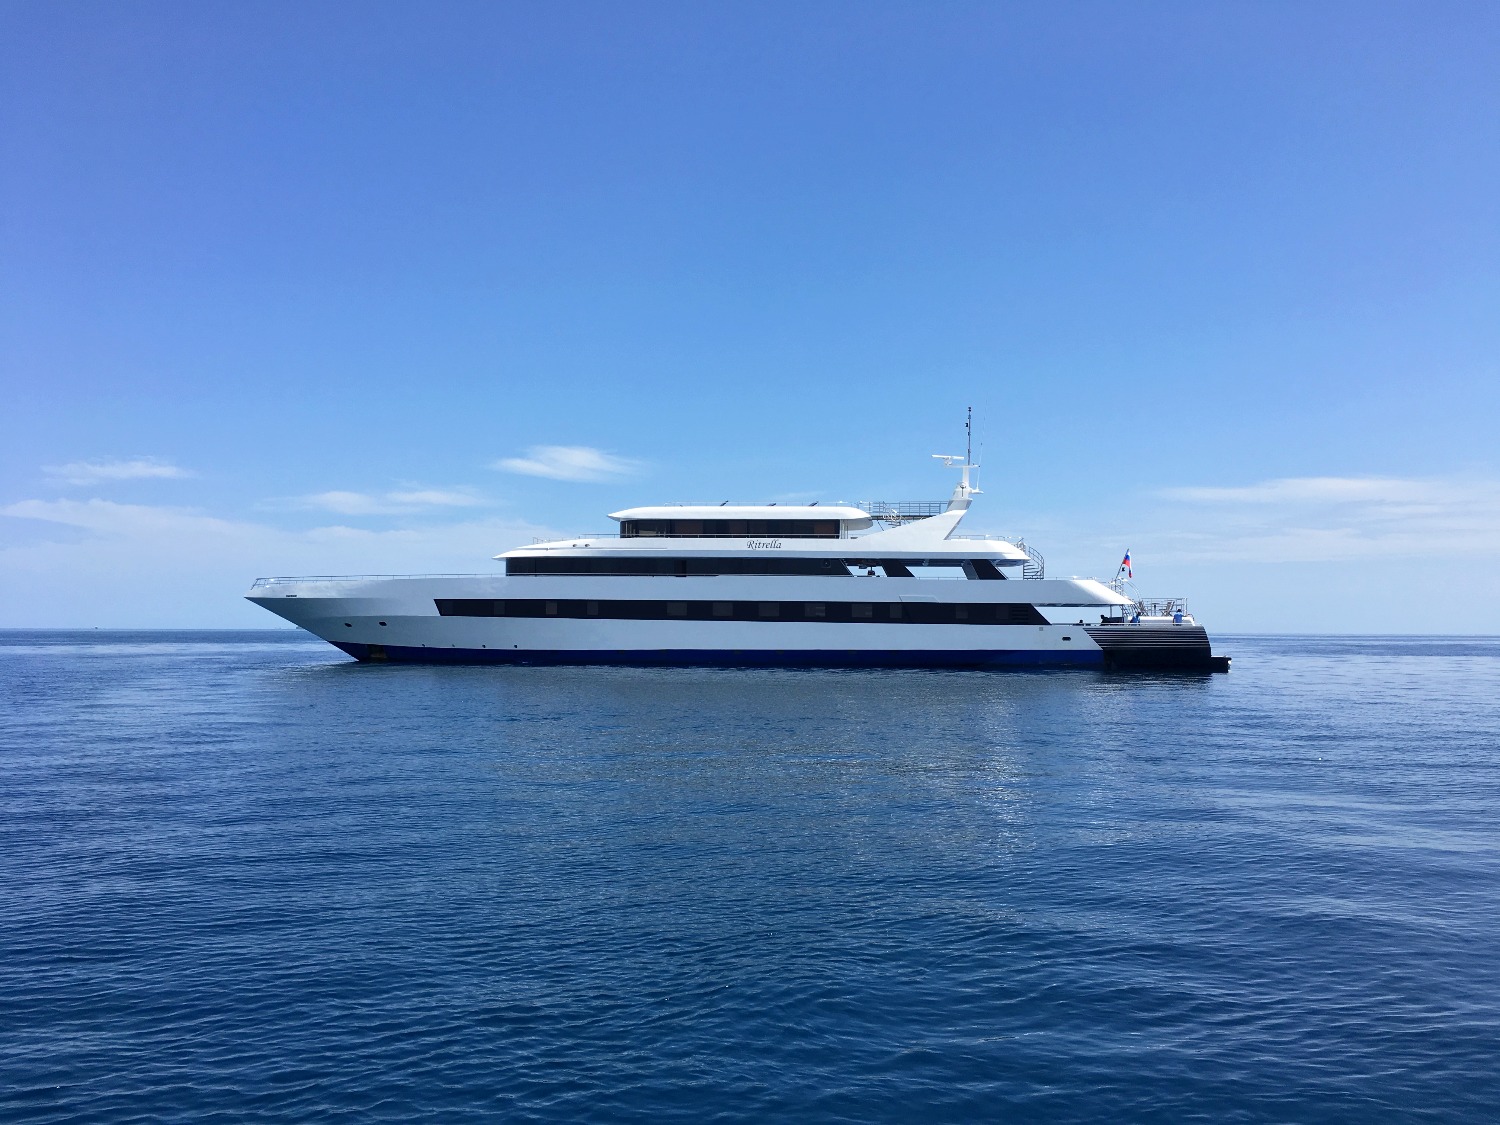 Ritrella Yacht Profile